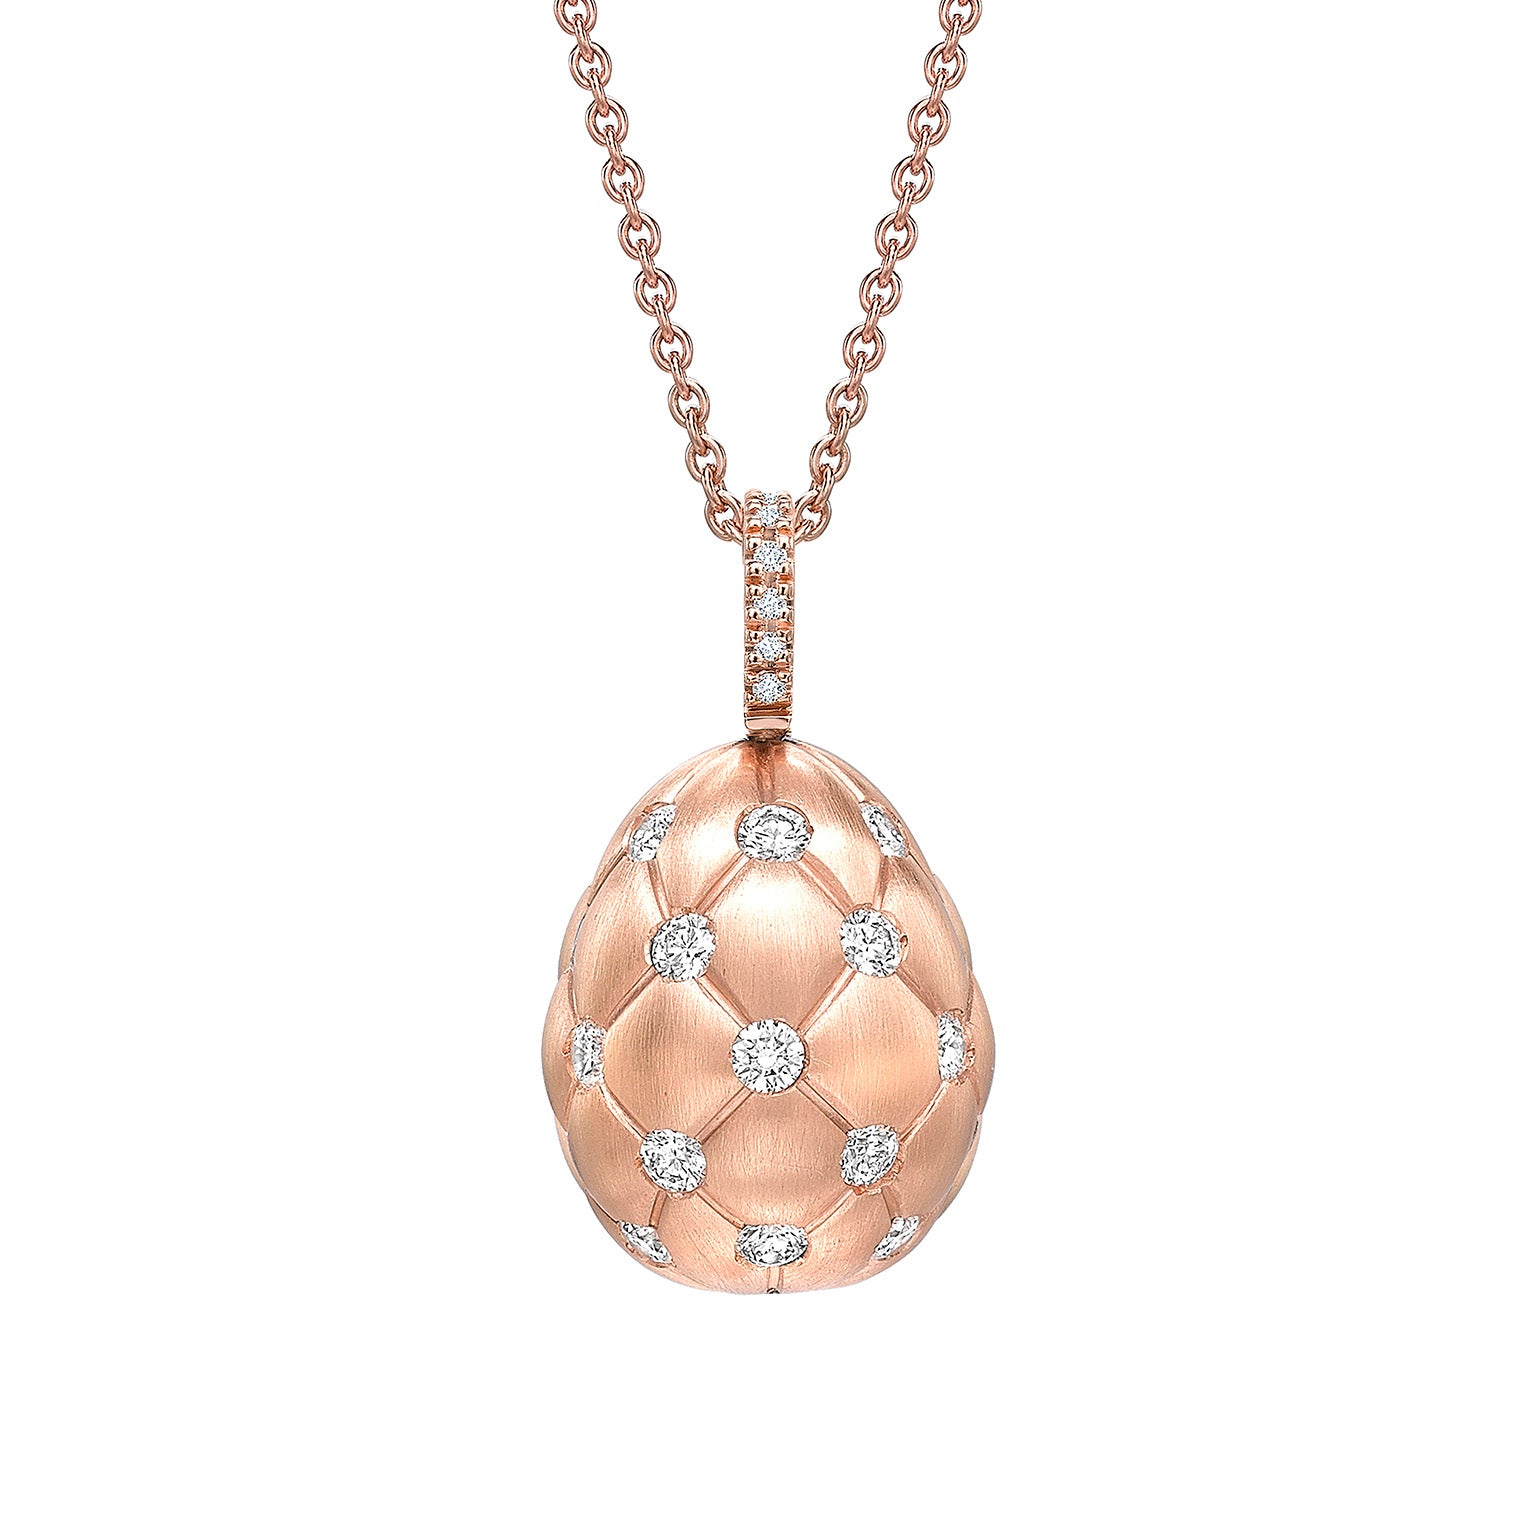 Treillage-Brushed-Rose-Gold-&-Diamond-Set-Egg-Pendant